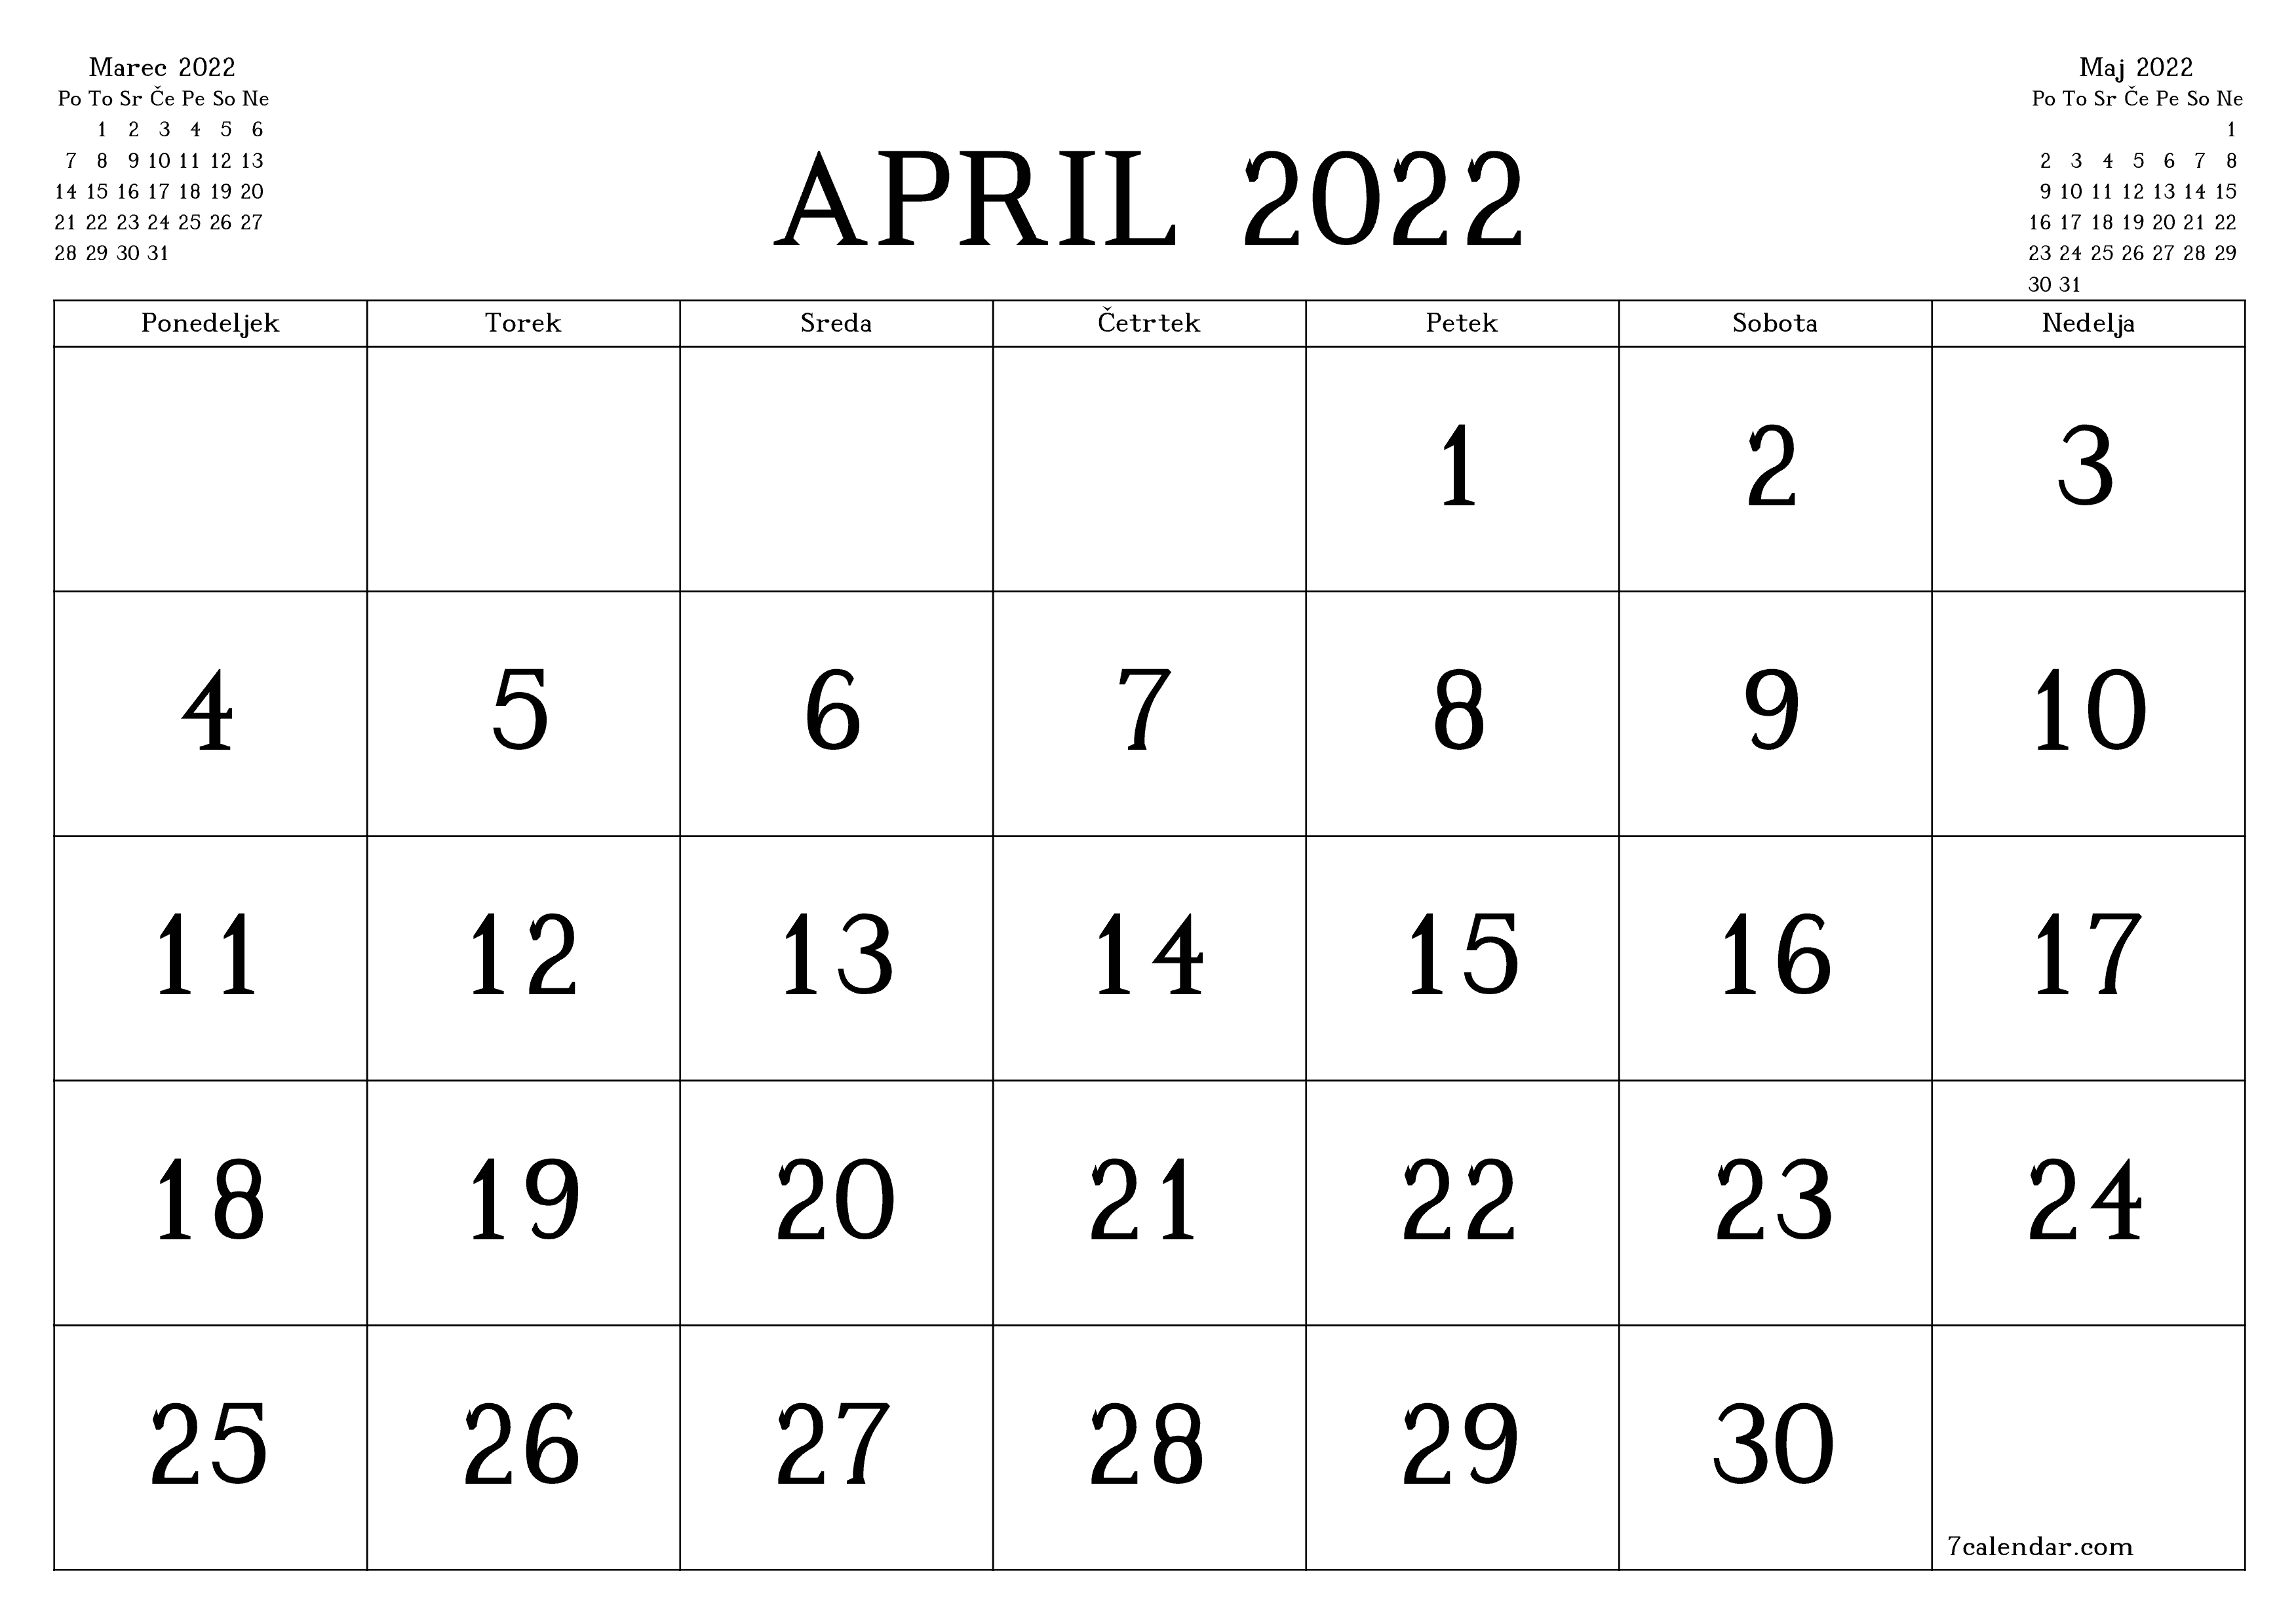 Prazen mesečni načrtovalec koledarja za mesec April 2022 z opombami, natisnjenimi v PDF PNG Slovenian